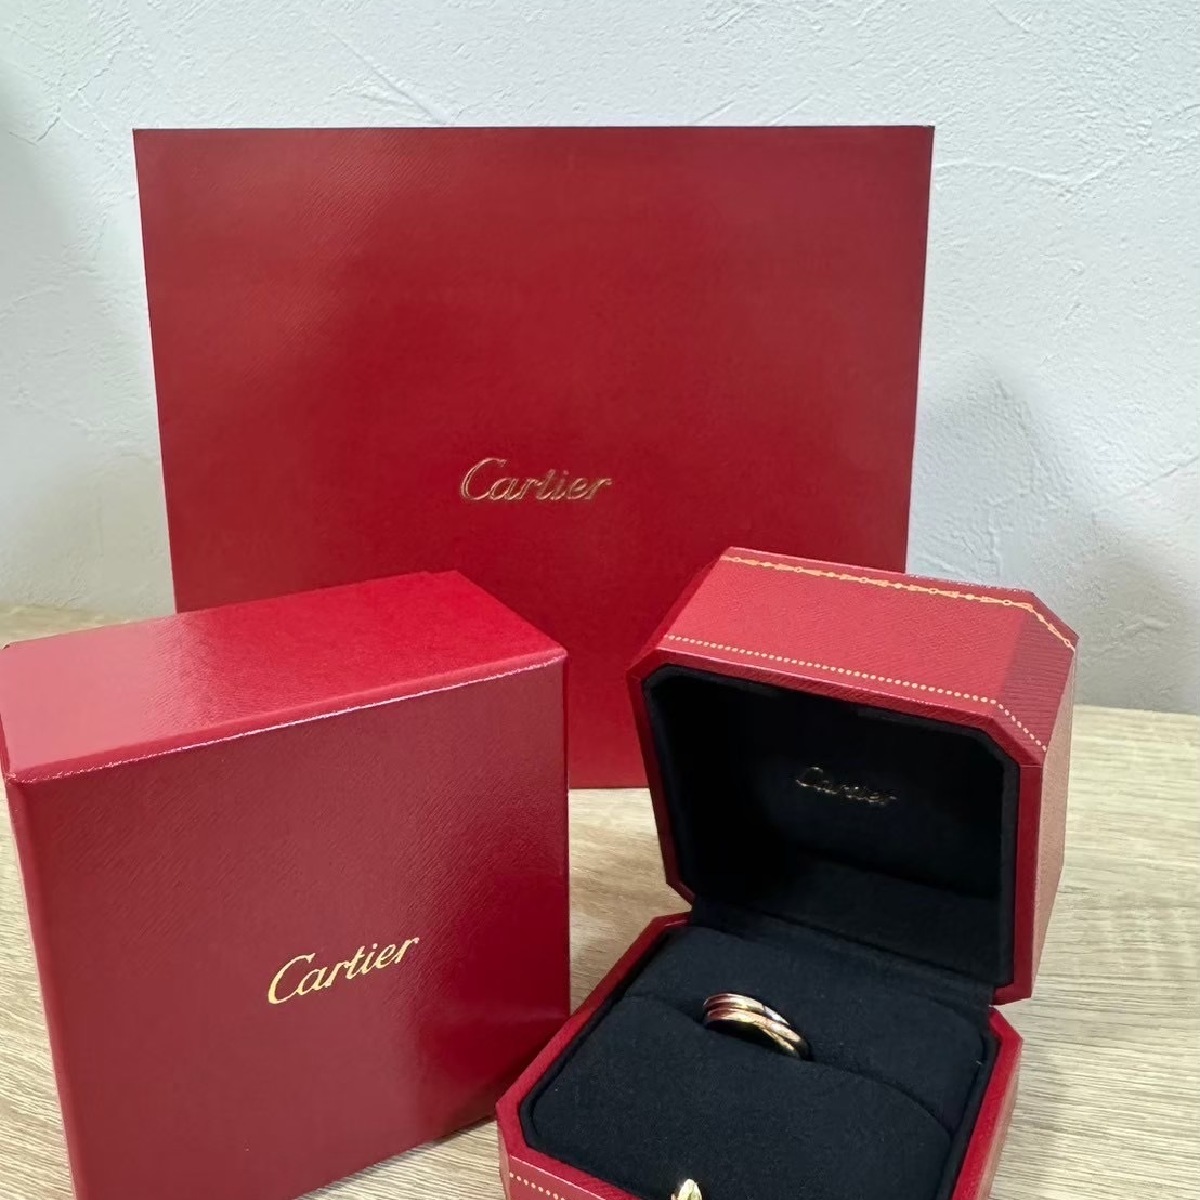 【カルティエ】ボーナスで買ったご褒美リング「Cartier」トリニティリング